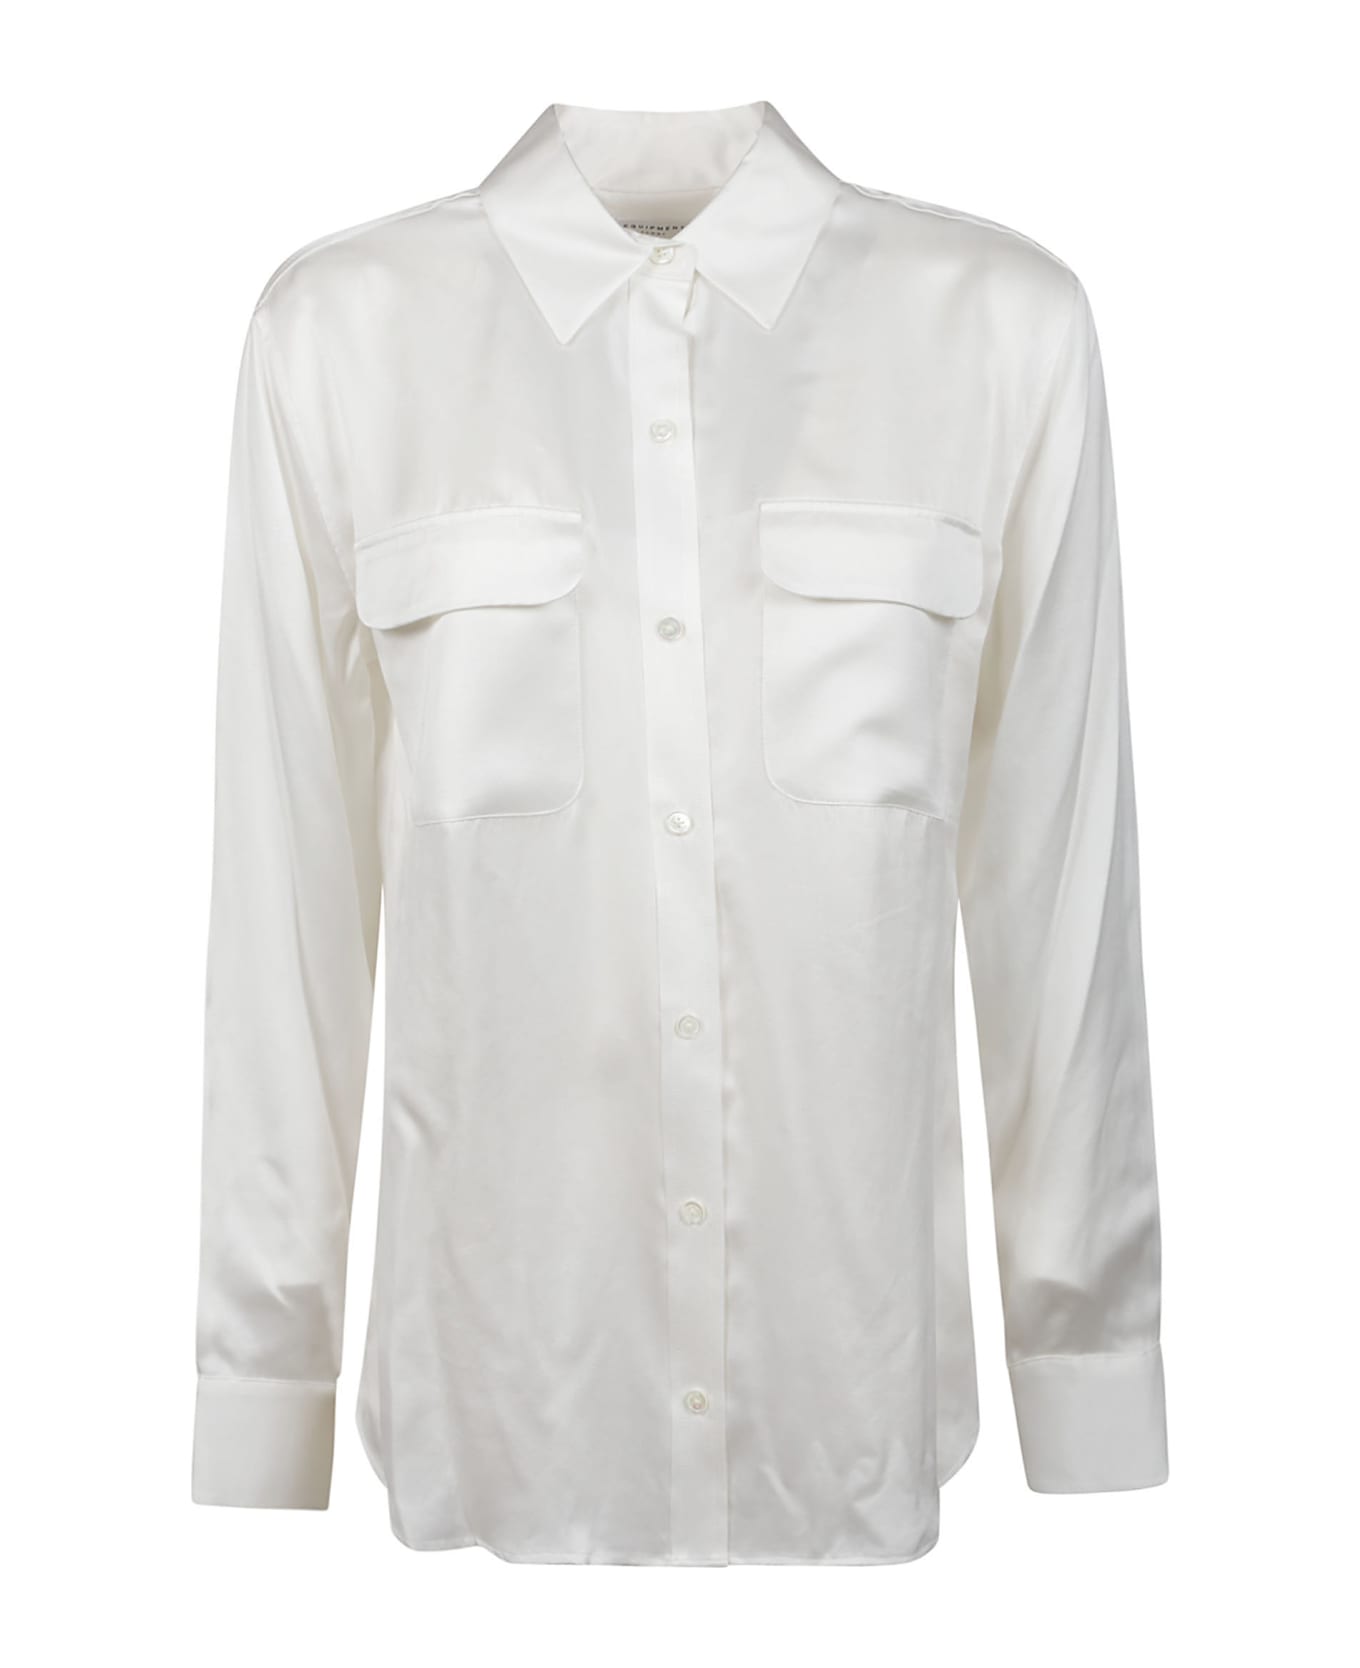 Equipment Signature Long Sleeve Shirt - Nature White シャツ